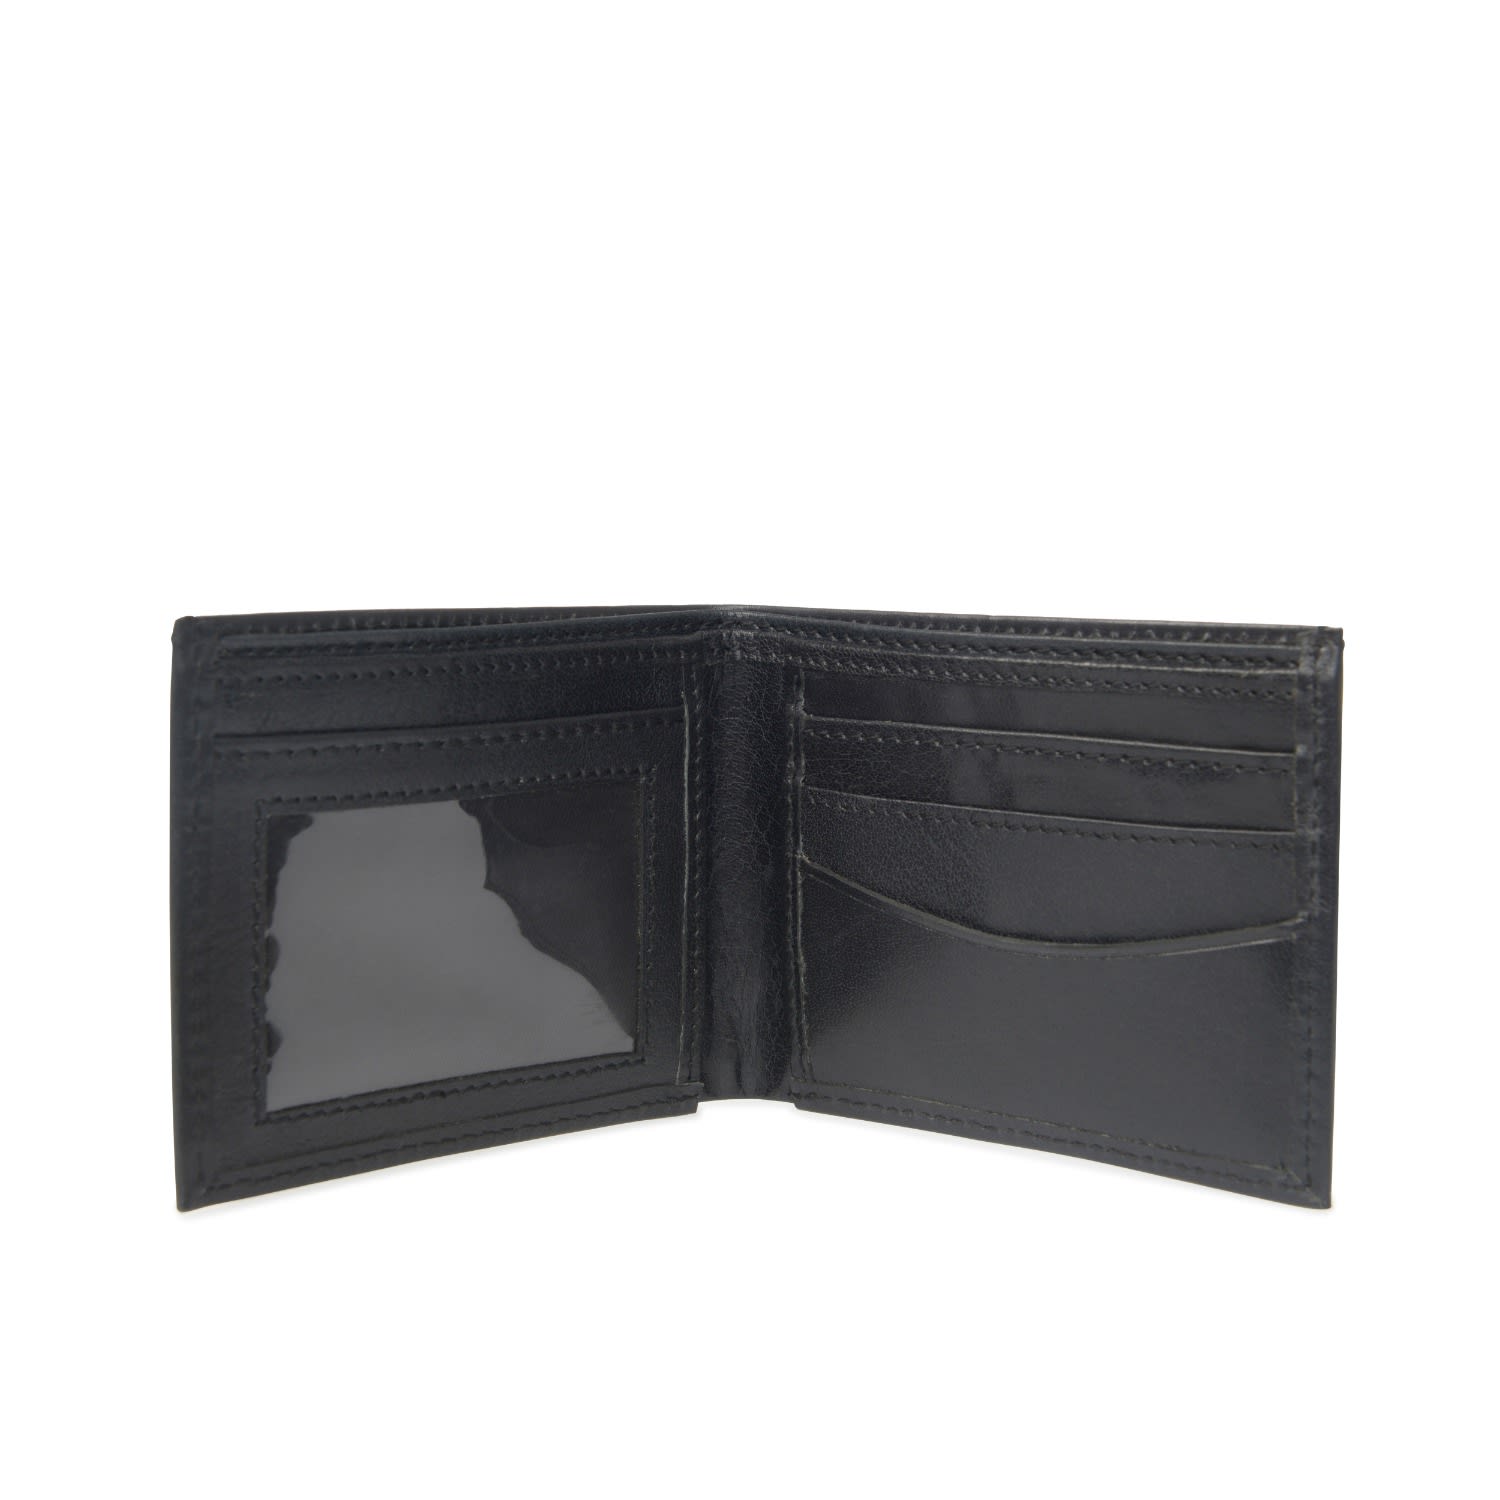 Vida Vida Men's Classic Black Leather Id Wallet